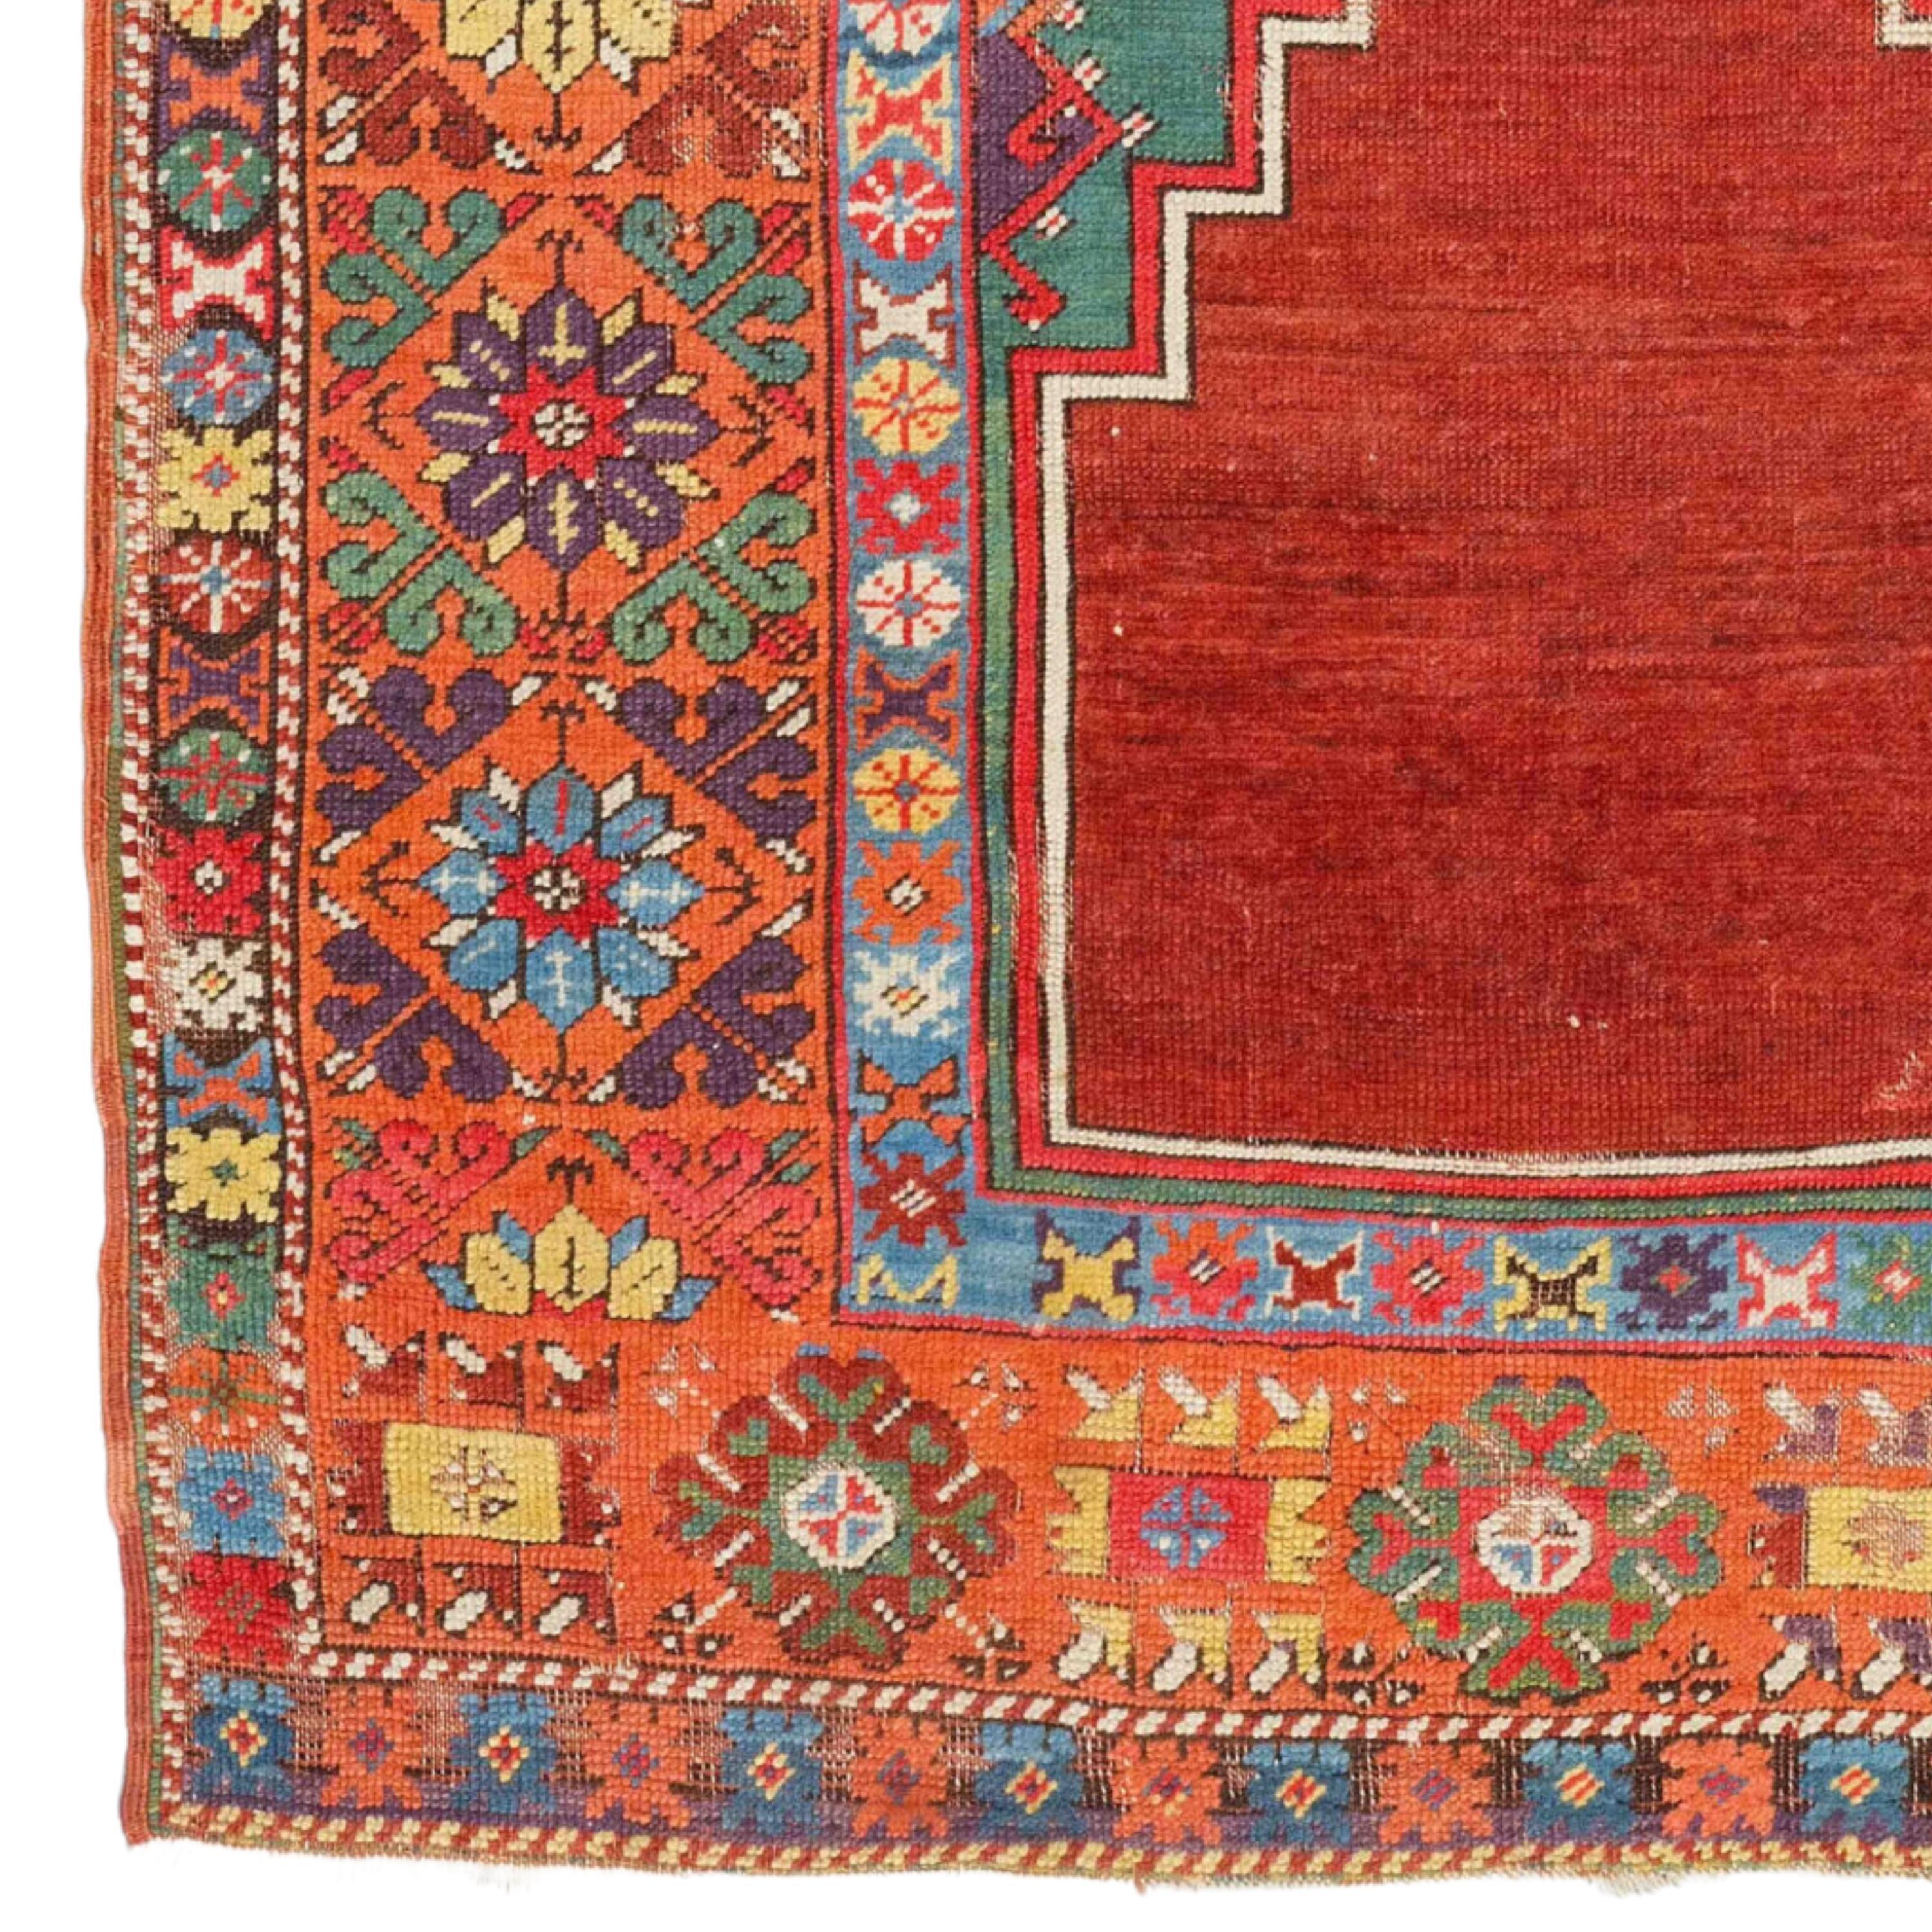 Tapis Anatolien Konya Ladik du 19ème siècle 115 x 165 cm (3,77 x 5,41 ft)

Plus récemment, les tapis de la région ont repris des motifs largement répandus dans tout le pays. Un type de tapis de prière avec des colonnes et des arcs semble descendre